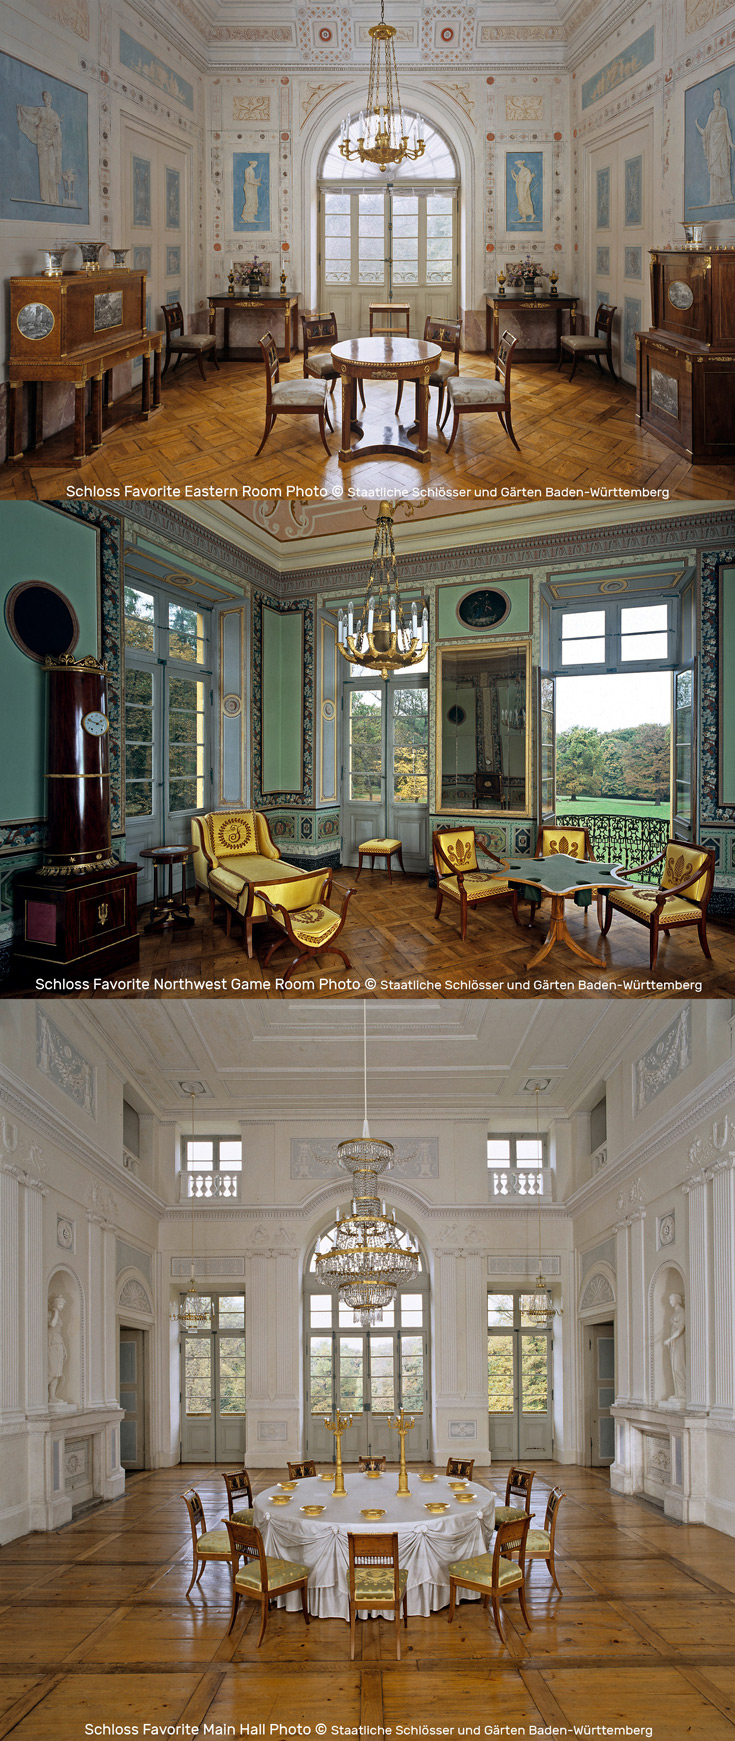 German Examples of Beautiful, Well-preserved Neoclassical Interiors | Interior Schloss Favorite Photos by Staatliche Schlösser und Gärten Baden-Württemberg